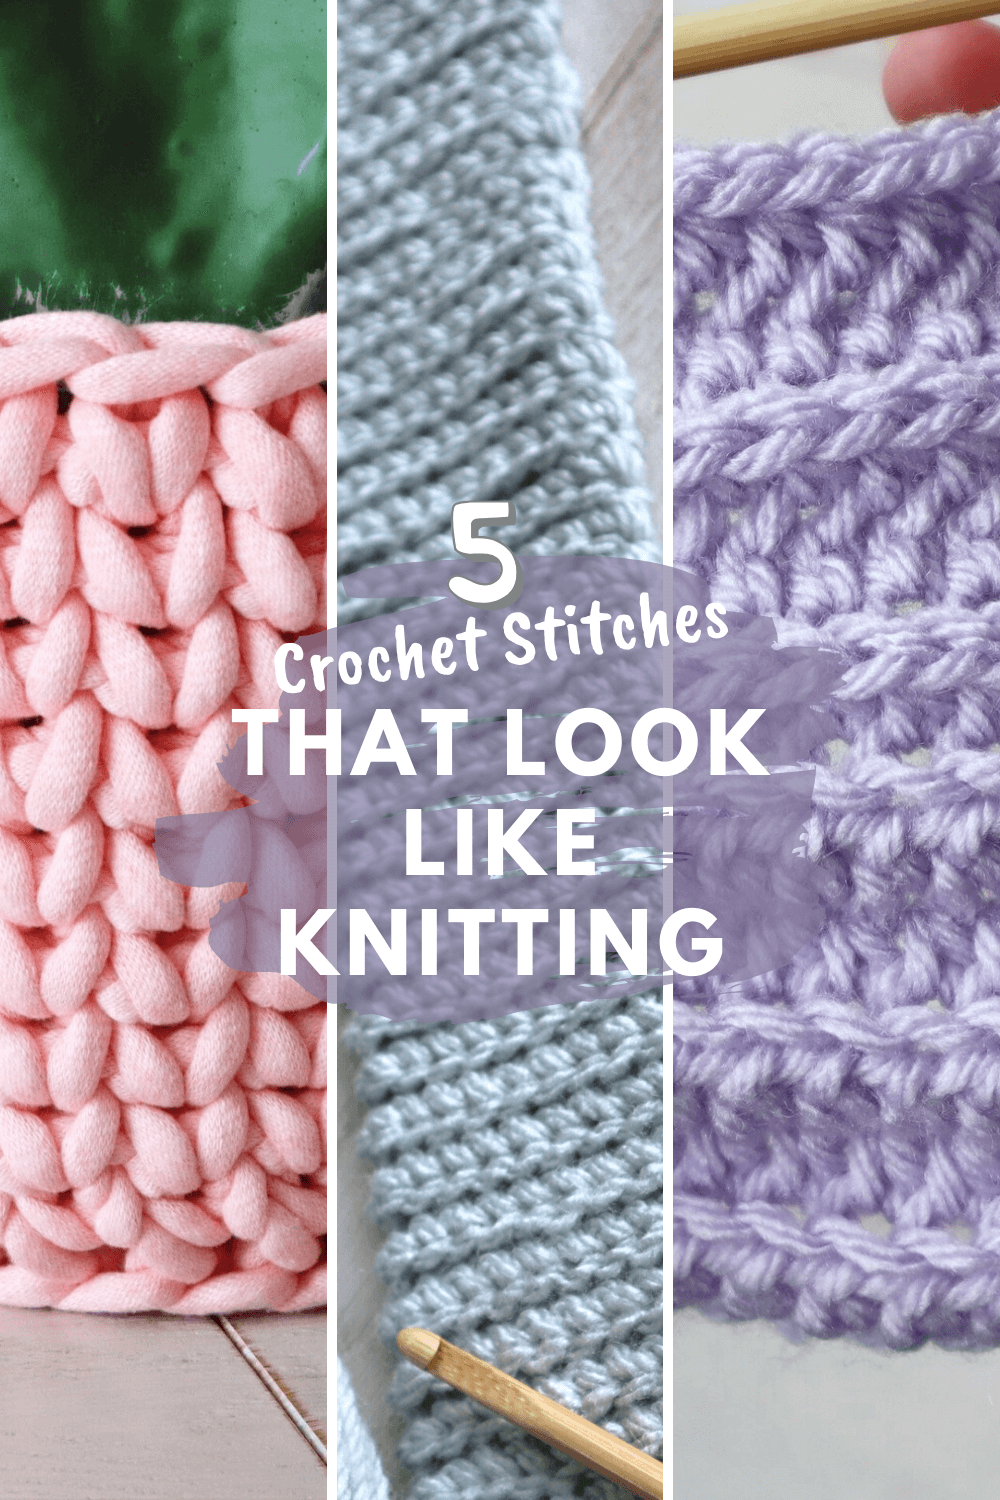 Crochet that looks like knitting (1)